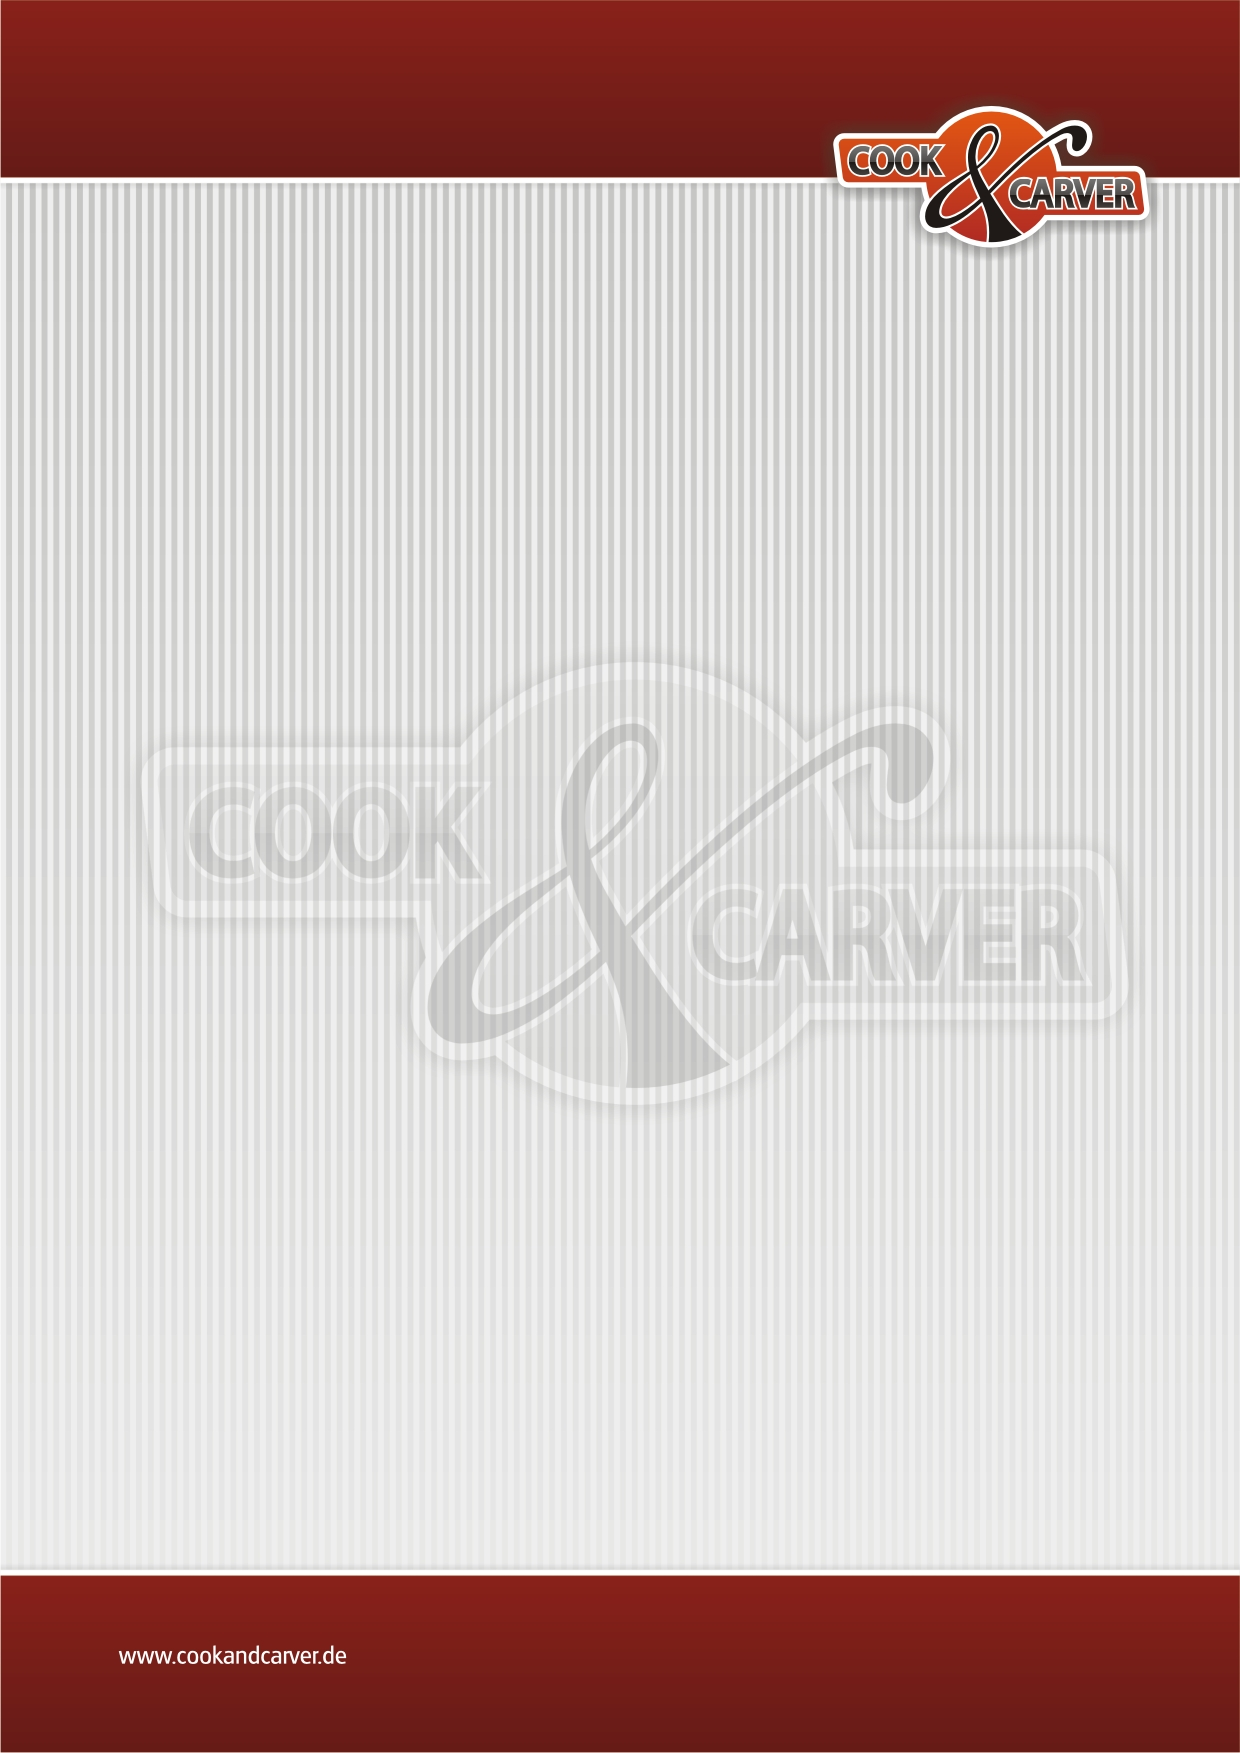 Cook & Carver stellt sich vor Gern möchte ich mich bei Ihnen als Miet- und Eventkoch vorstellen.